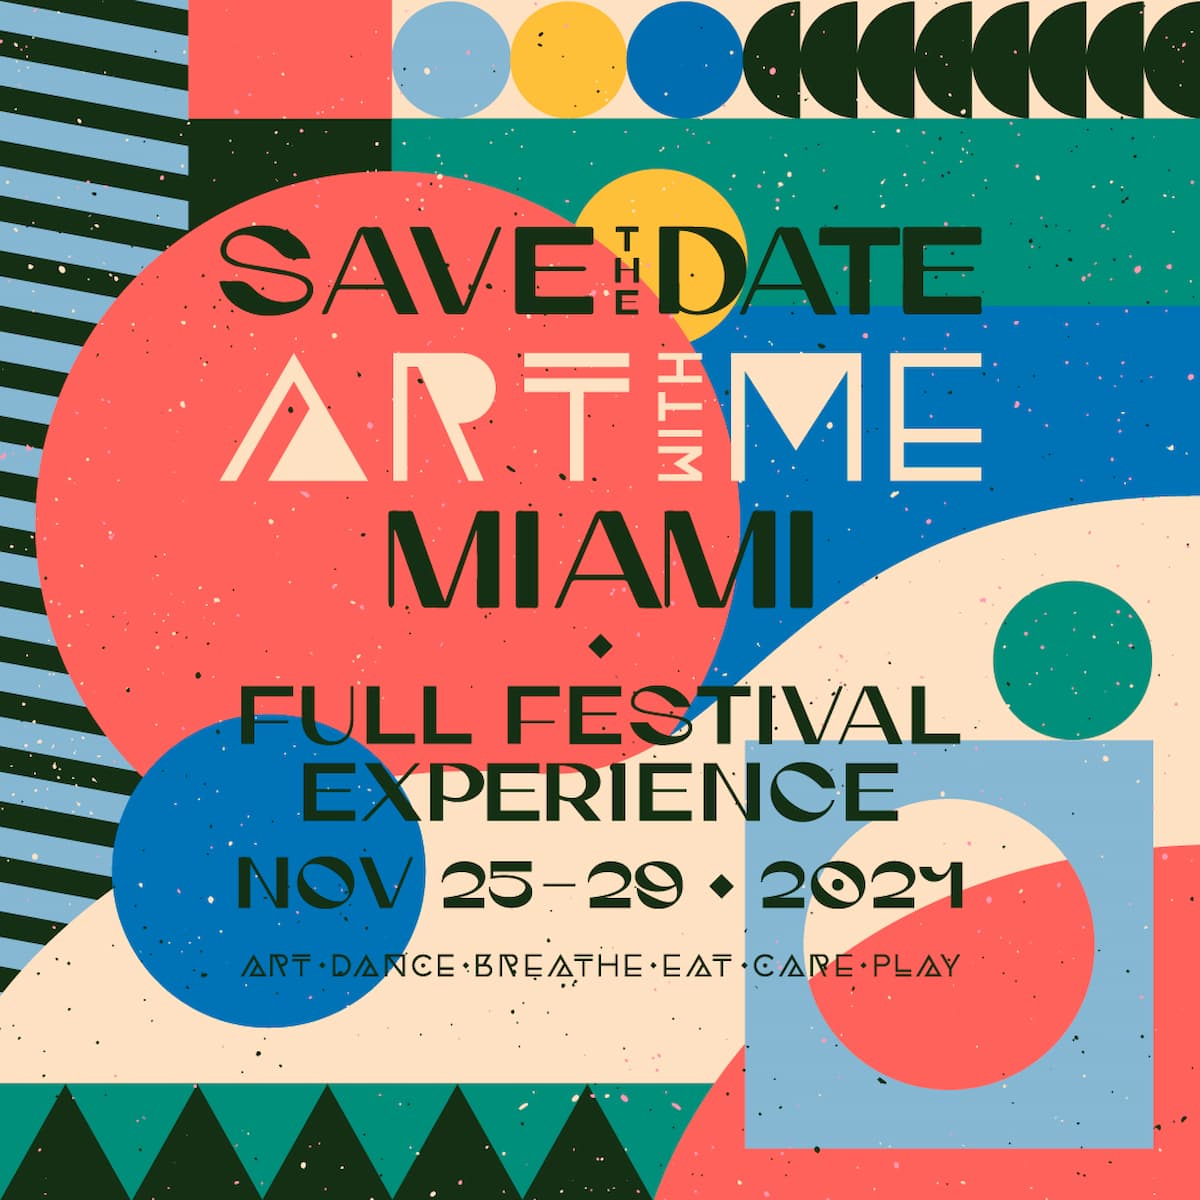 Art With Me confirma edição em Miami e anuncia line-up completo